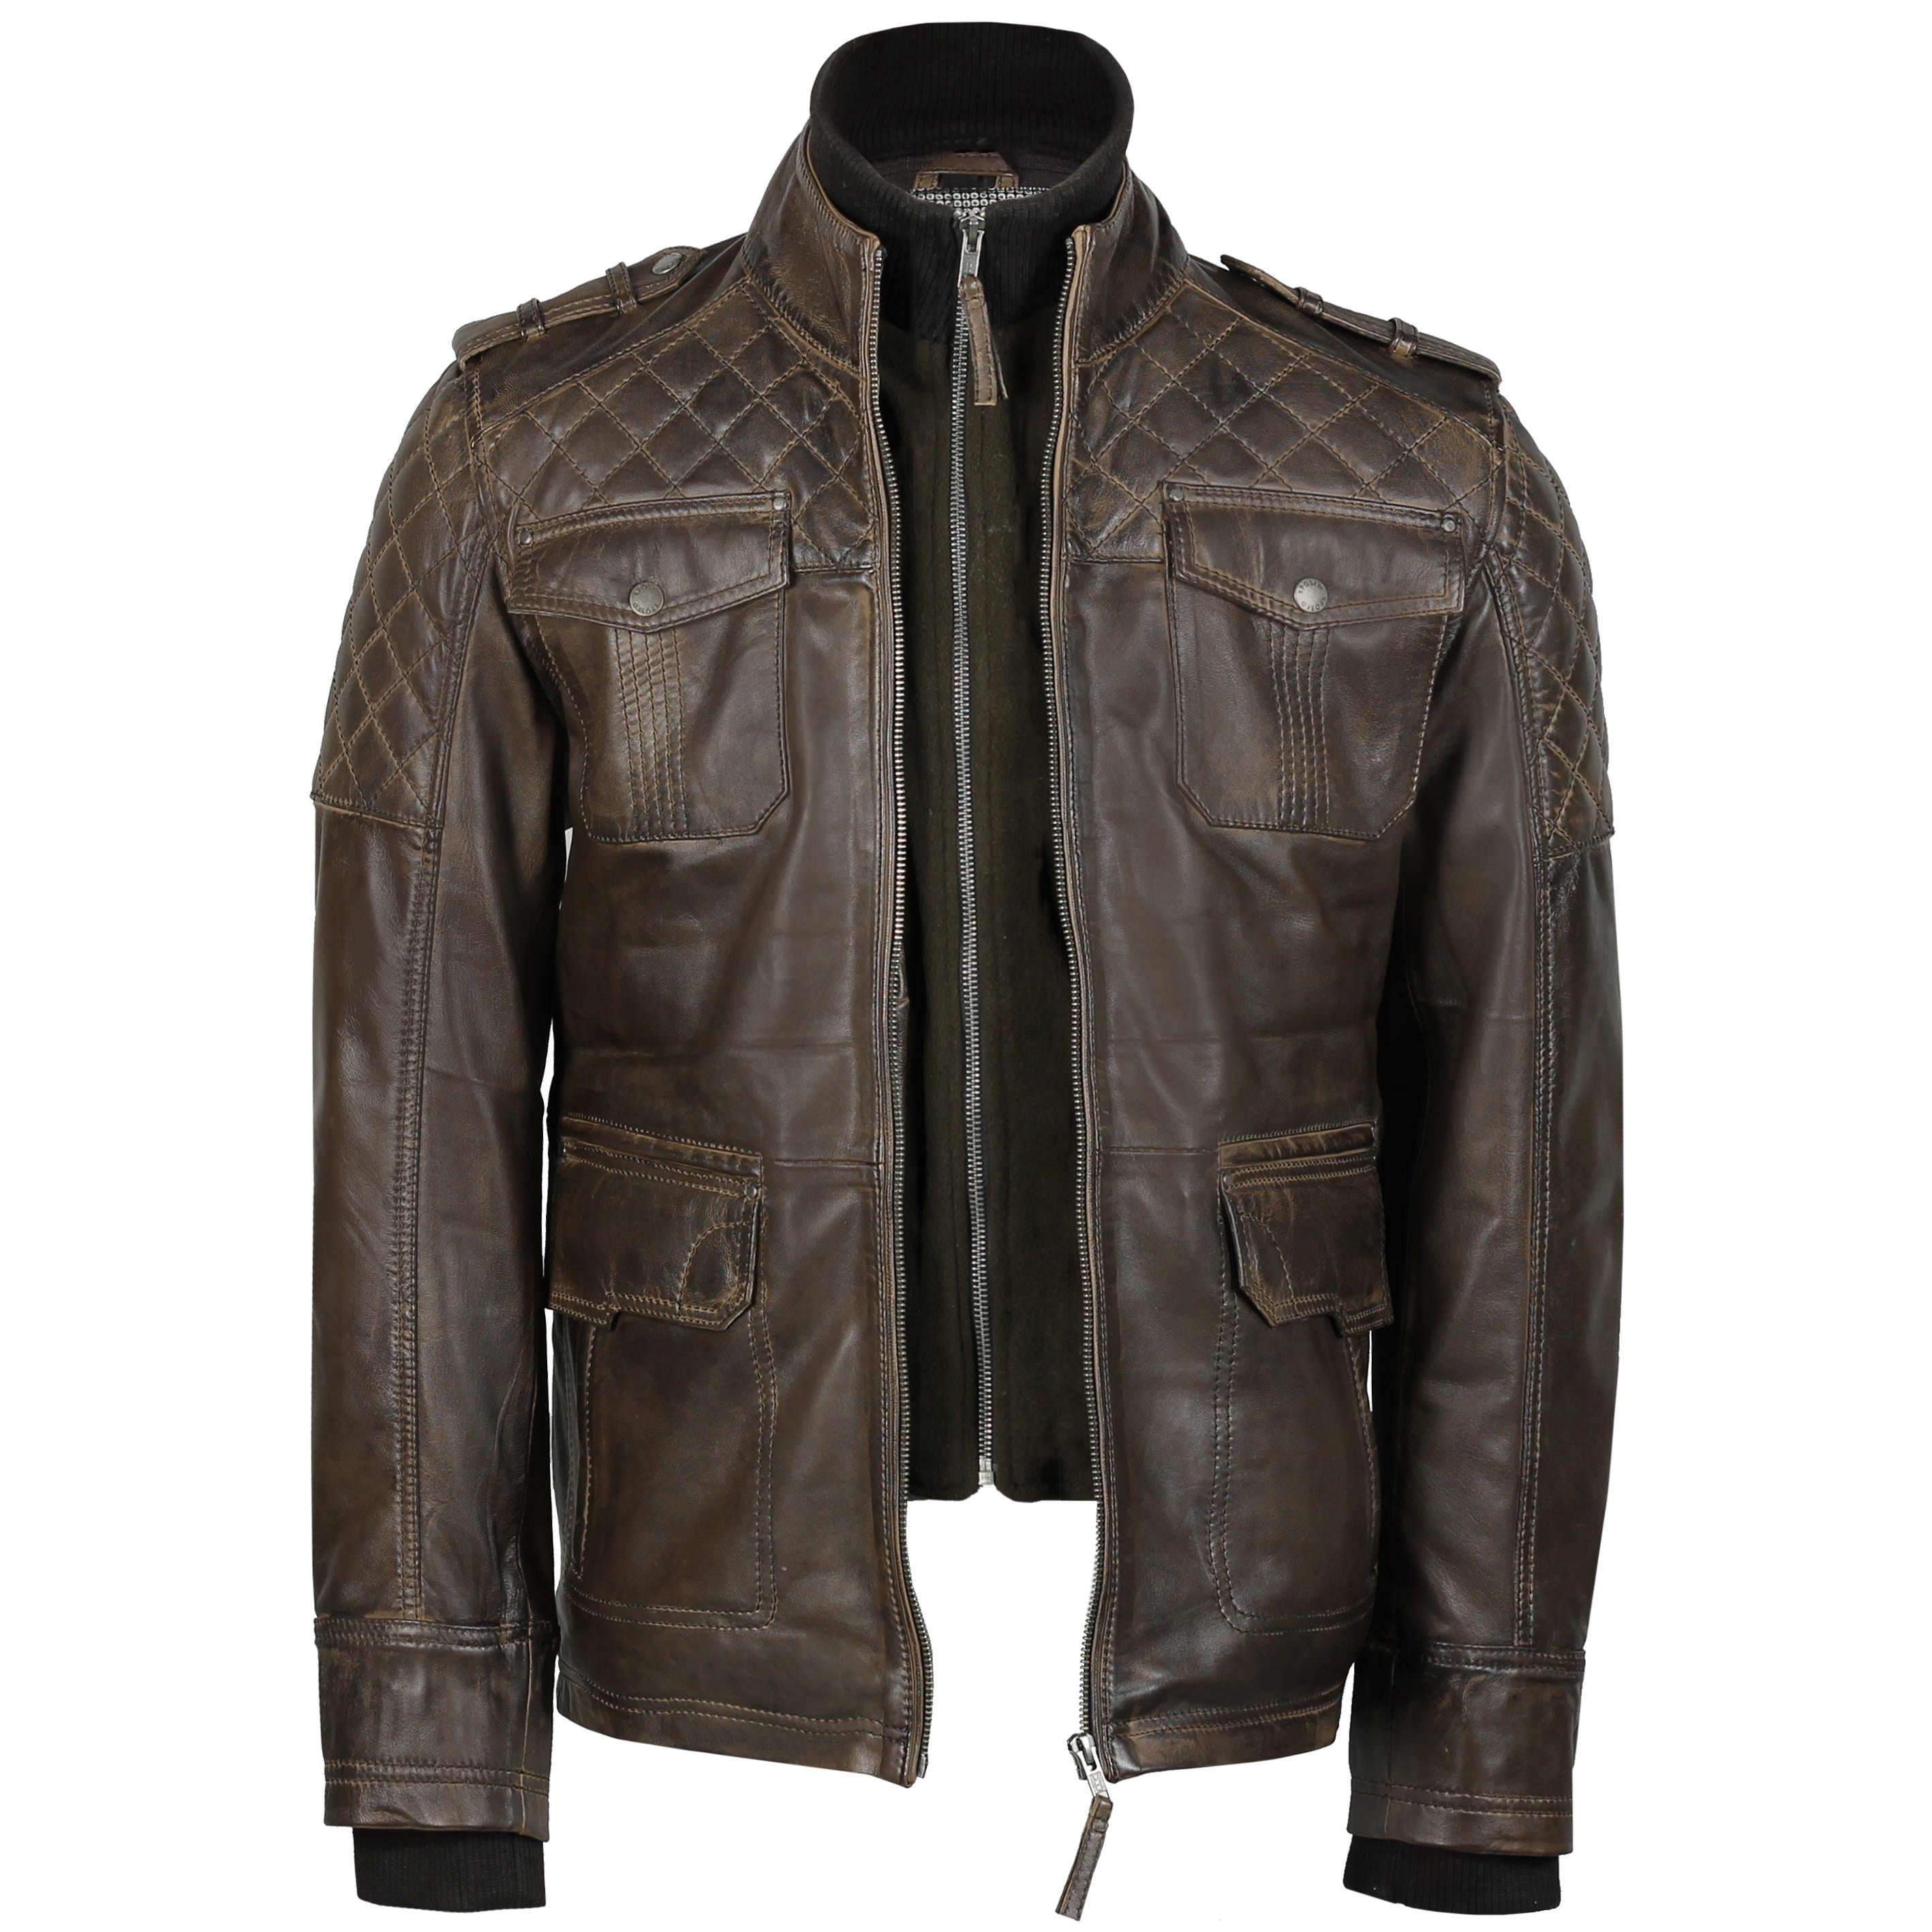 Genuine leather jacket, Classic motorcycle jacket, riding jacket, Ligh